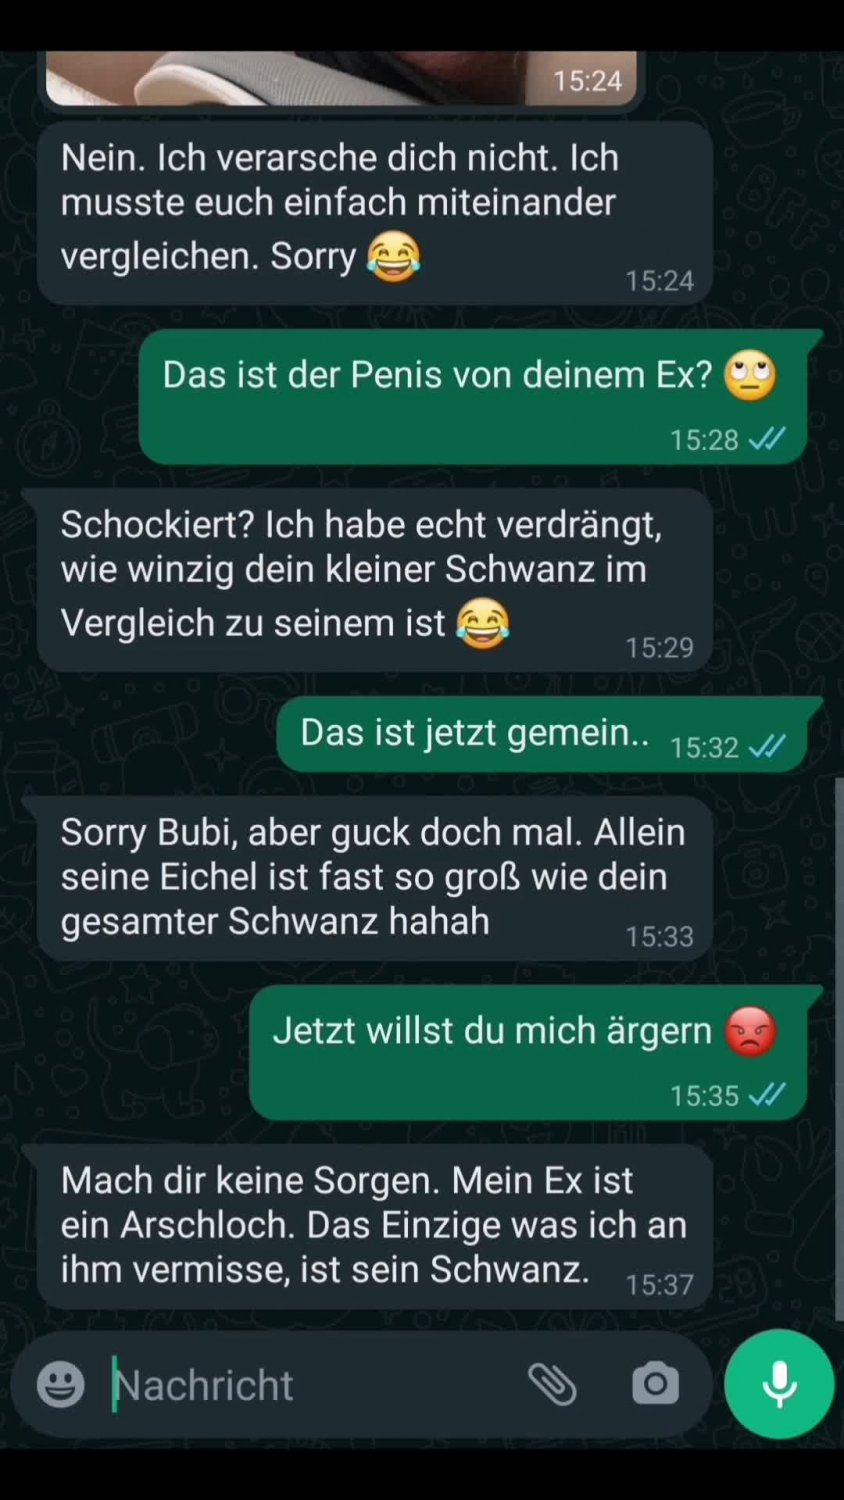 cuckold dirty talk deutsch Porn Photos Hd